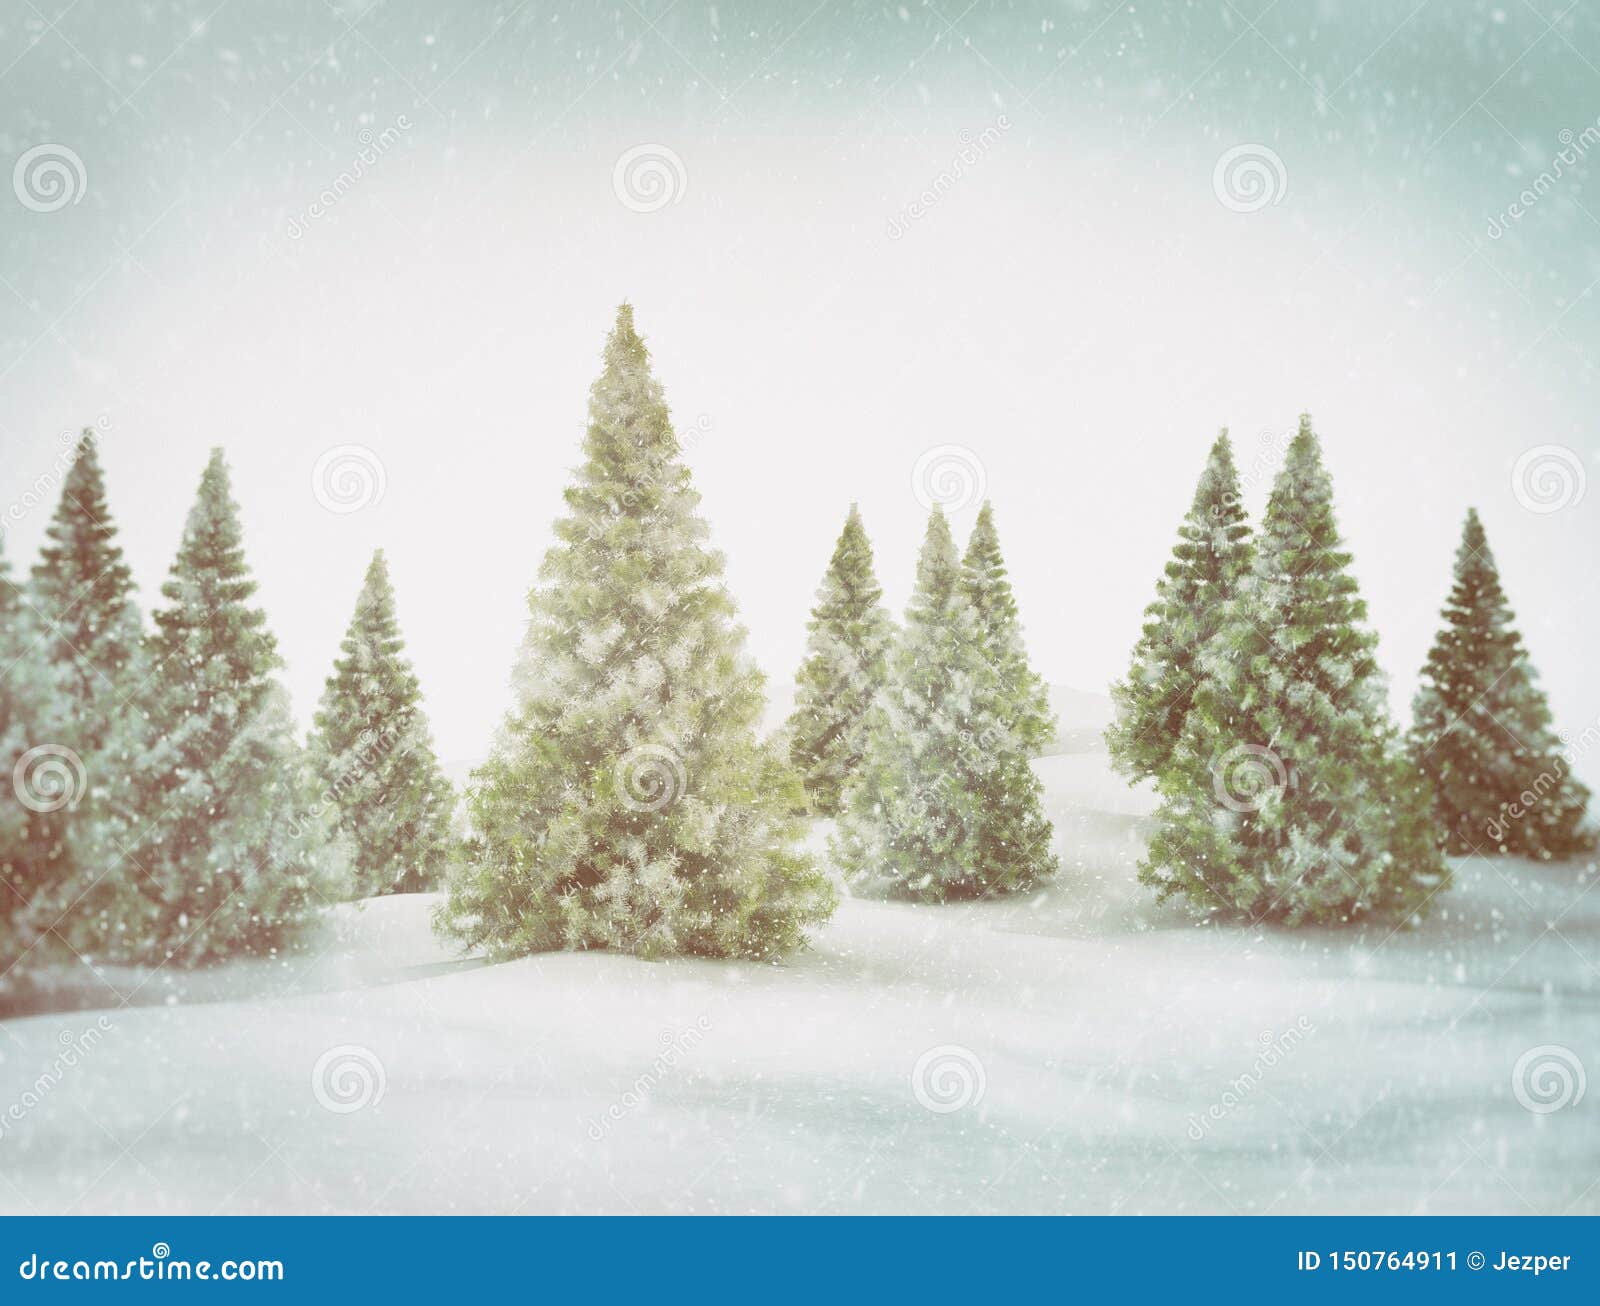 Hình nền Đông Giáng sinh cây xanh tuyết trắng là bức tranh đẹp như mơ ước với sắc xanh lạnh lùng, mang lại cảm giác của mùa đông tuyết rơi. Hình ảnh của cây thông Noel trang trí rực rỡ với hoa tuyết sẽ cảm nhận giáng sinh đầy ấm áp và tràn đầy yêu thương.